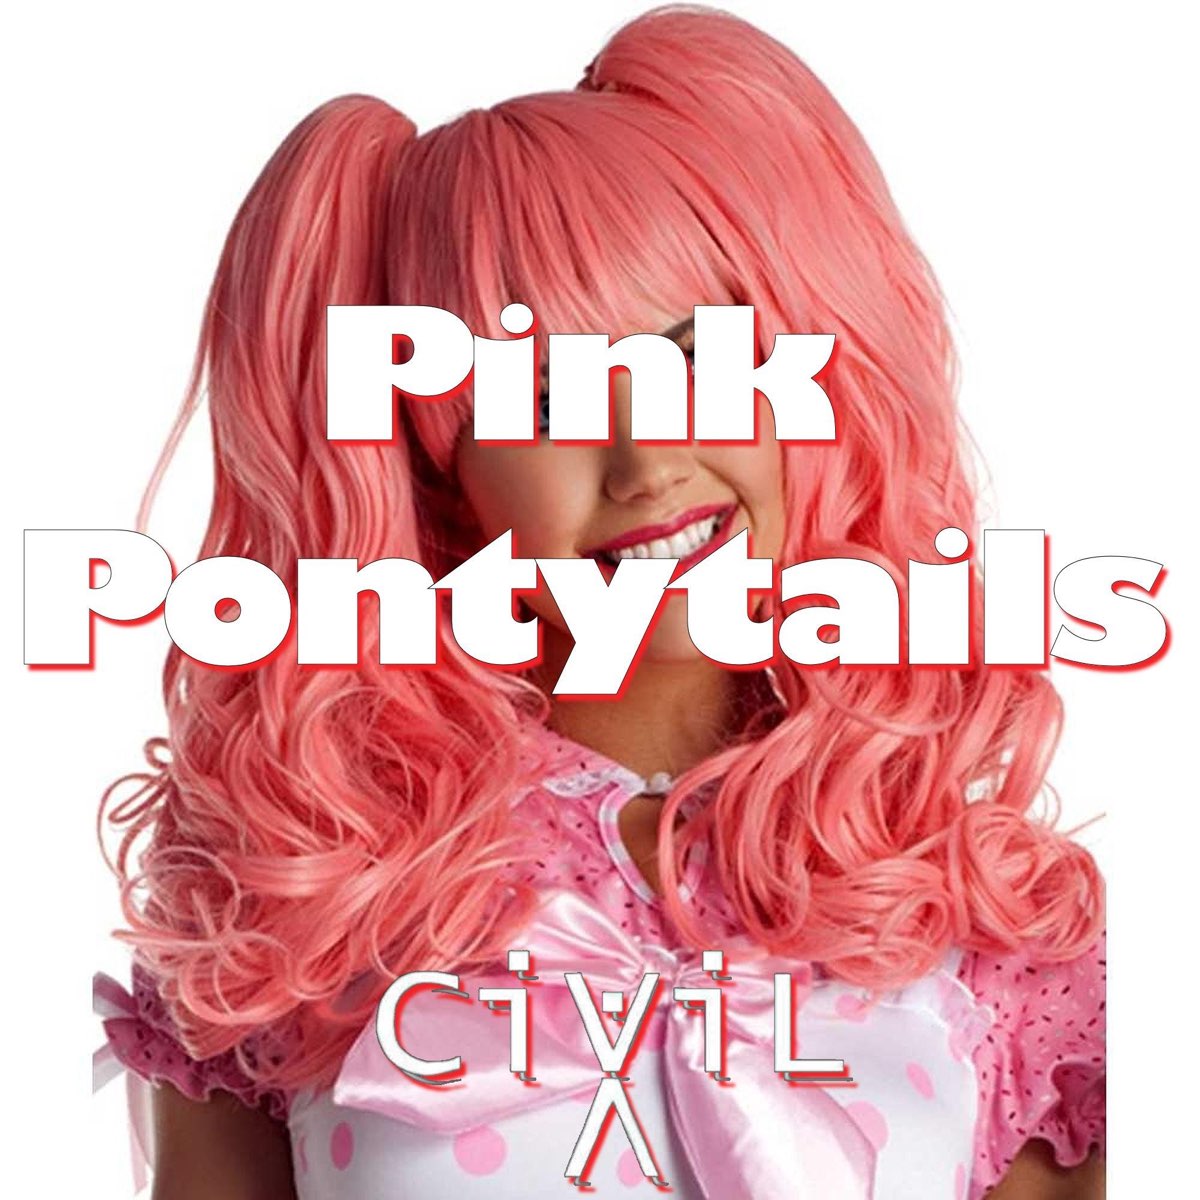 Сингл Пинк. Pink слушаю музыку. "Sinhour ponytails Pink".